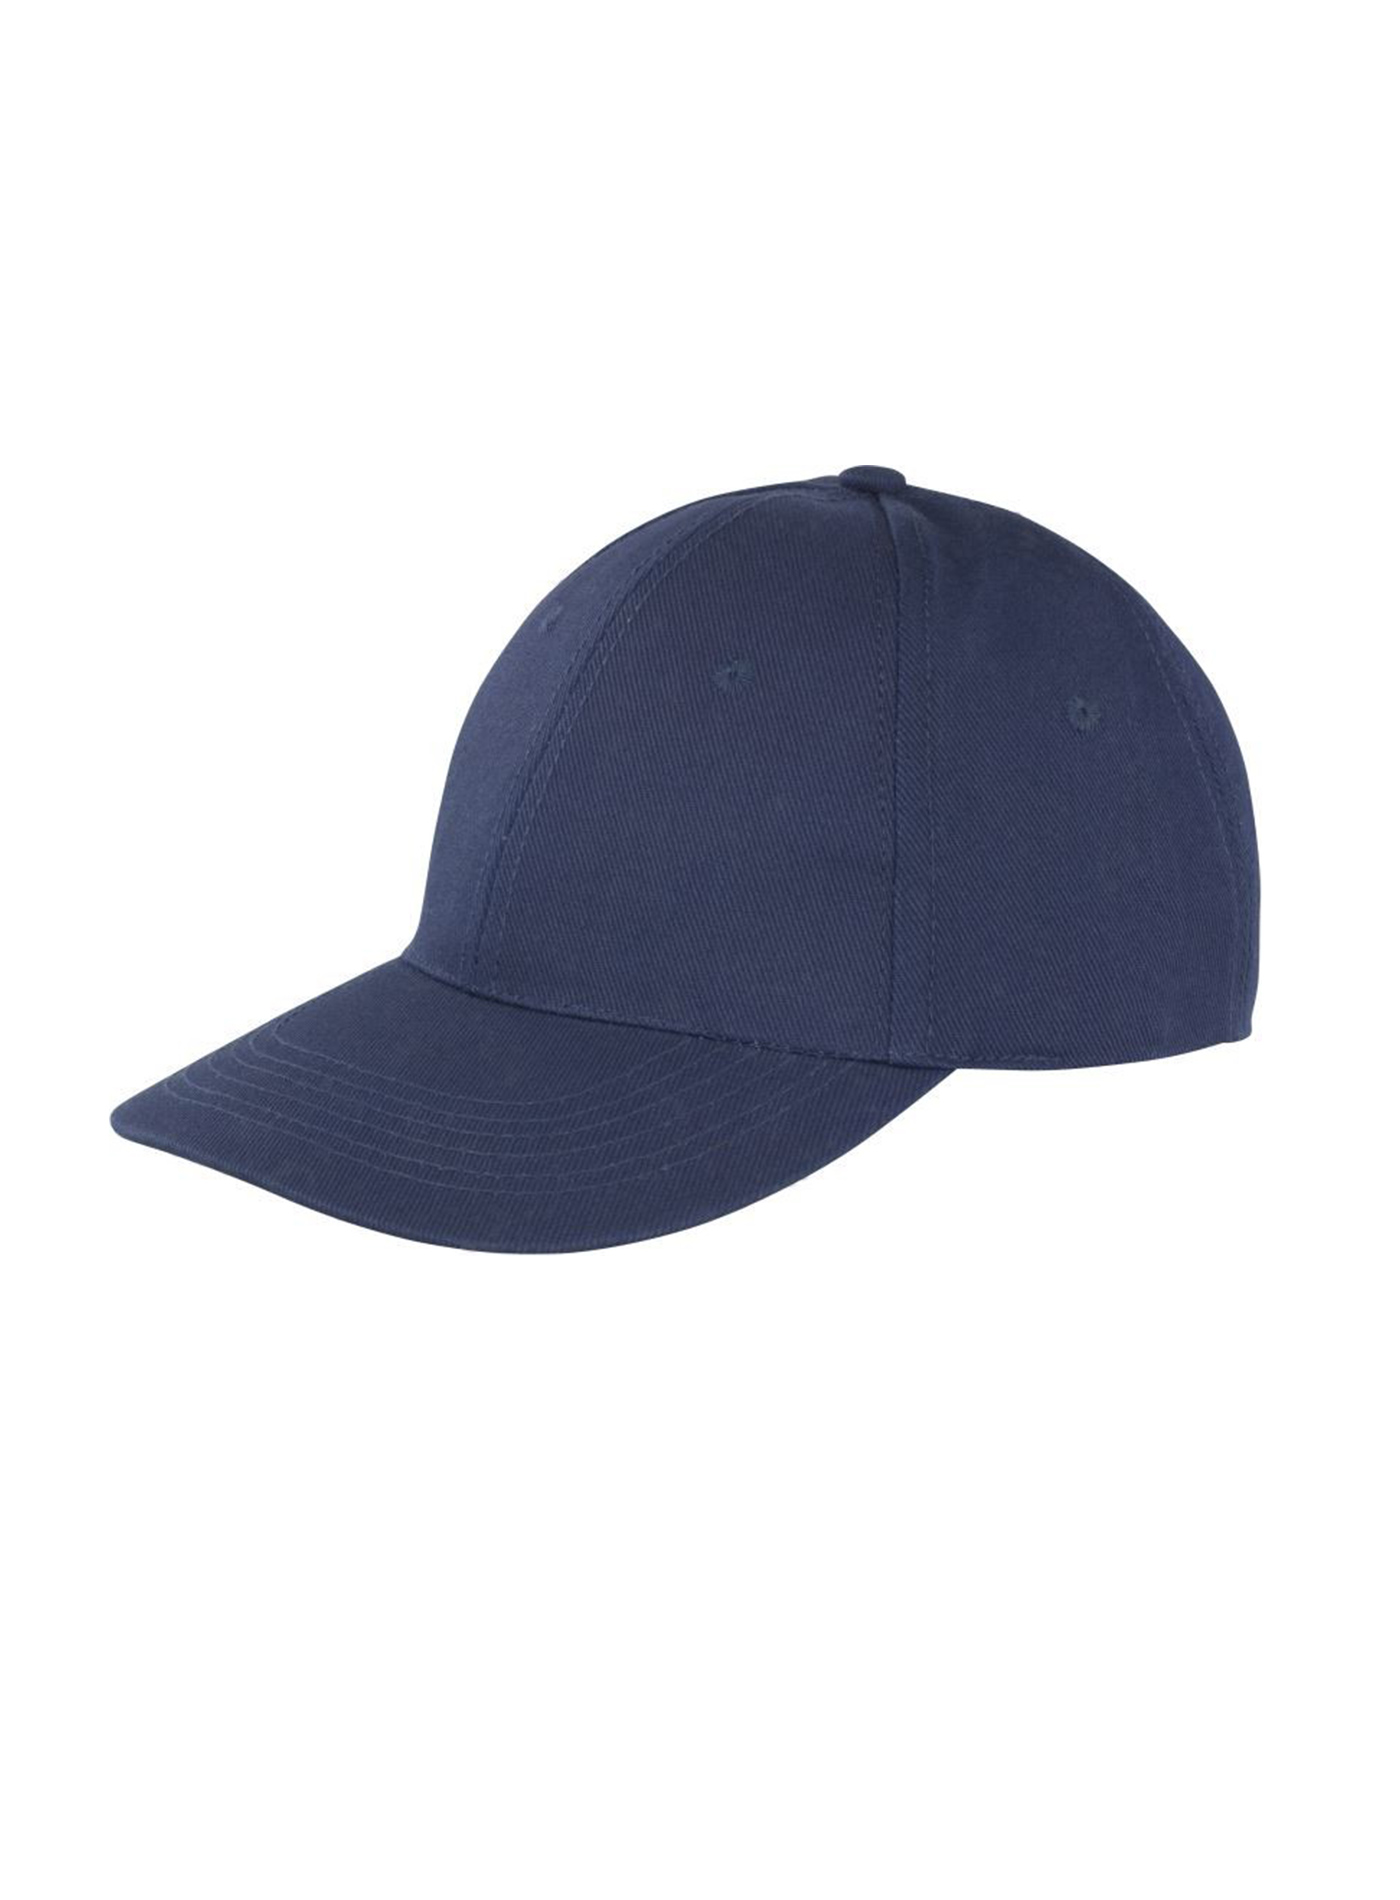 Kšiltovka Result headwear s nízkým profilem - Námořnická modrá univerzal